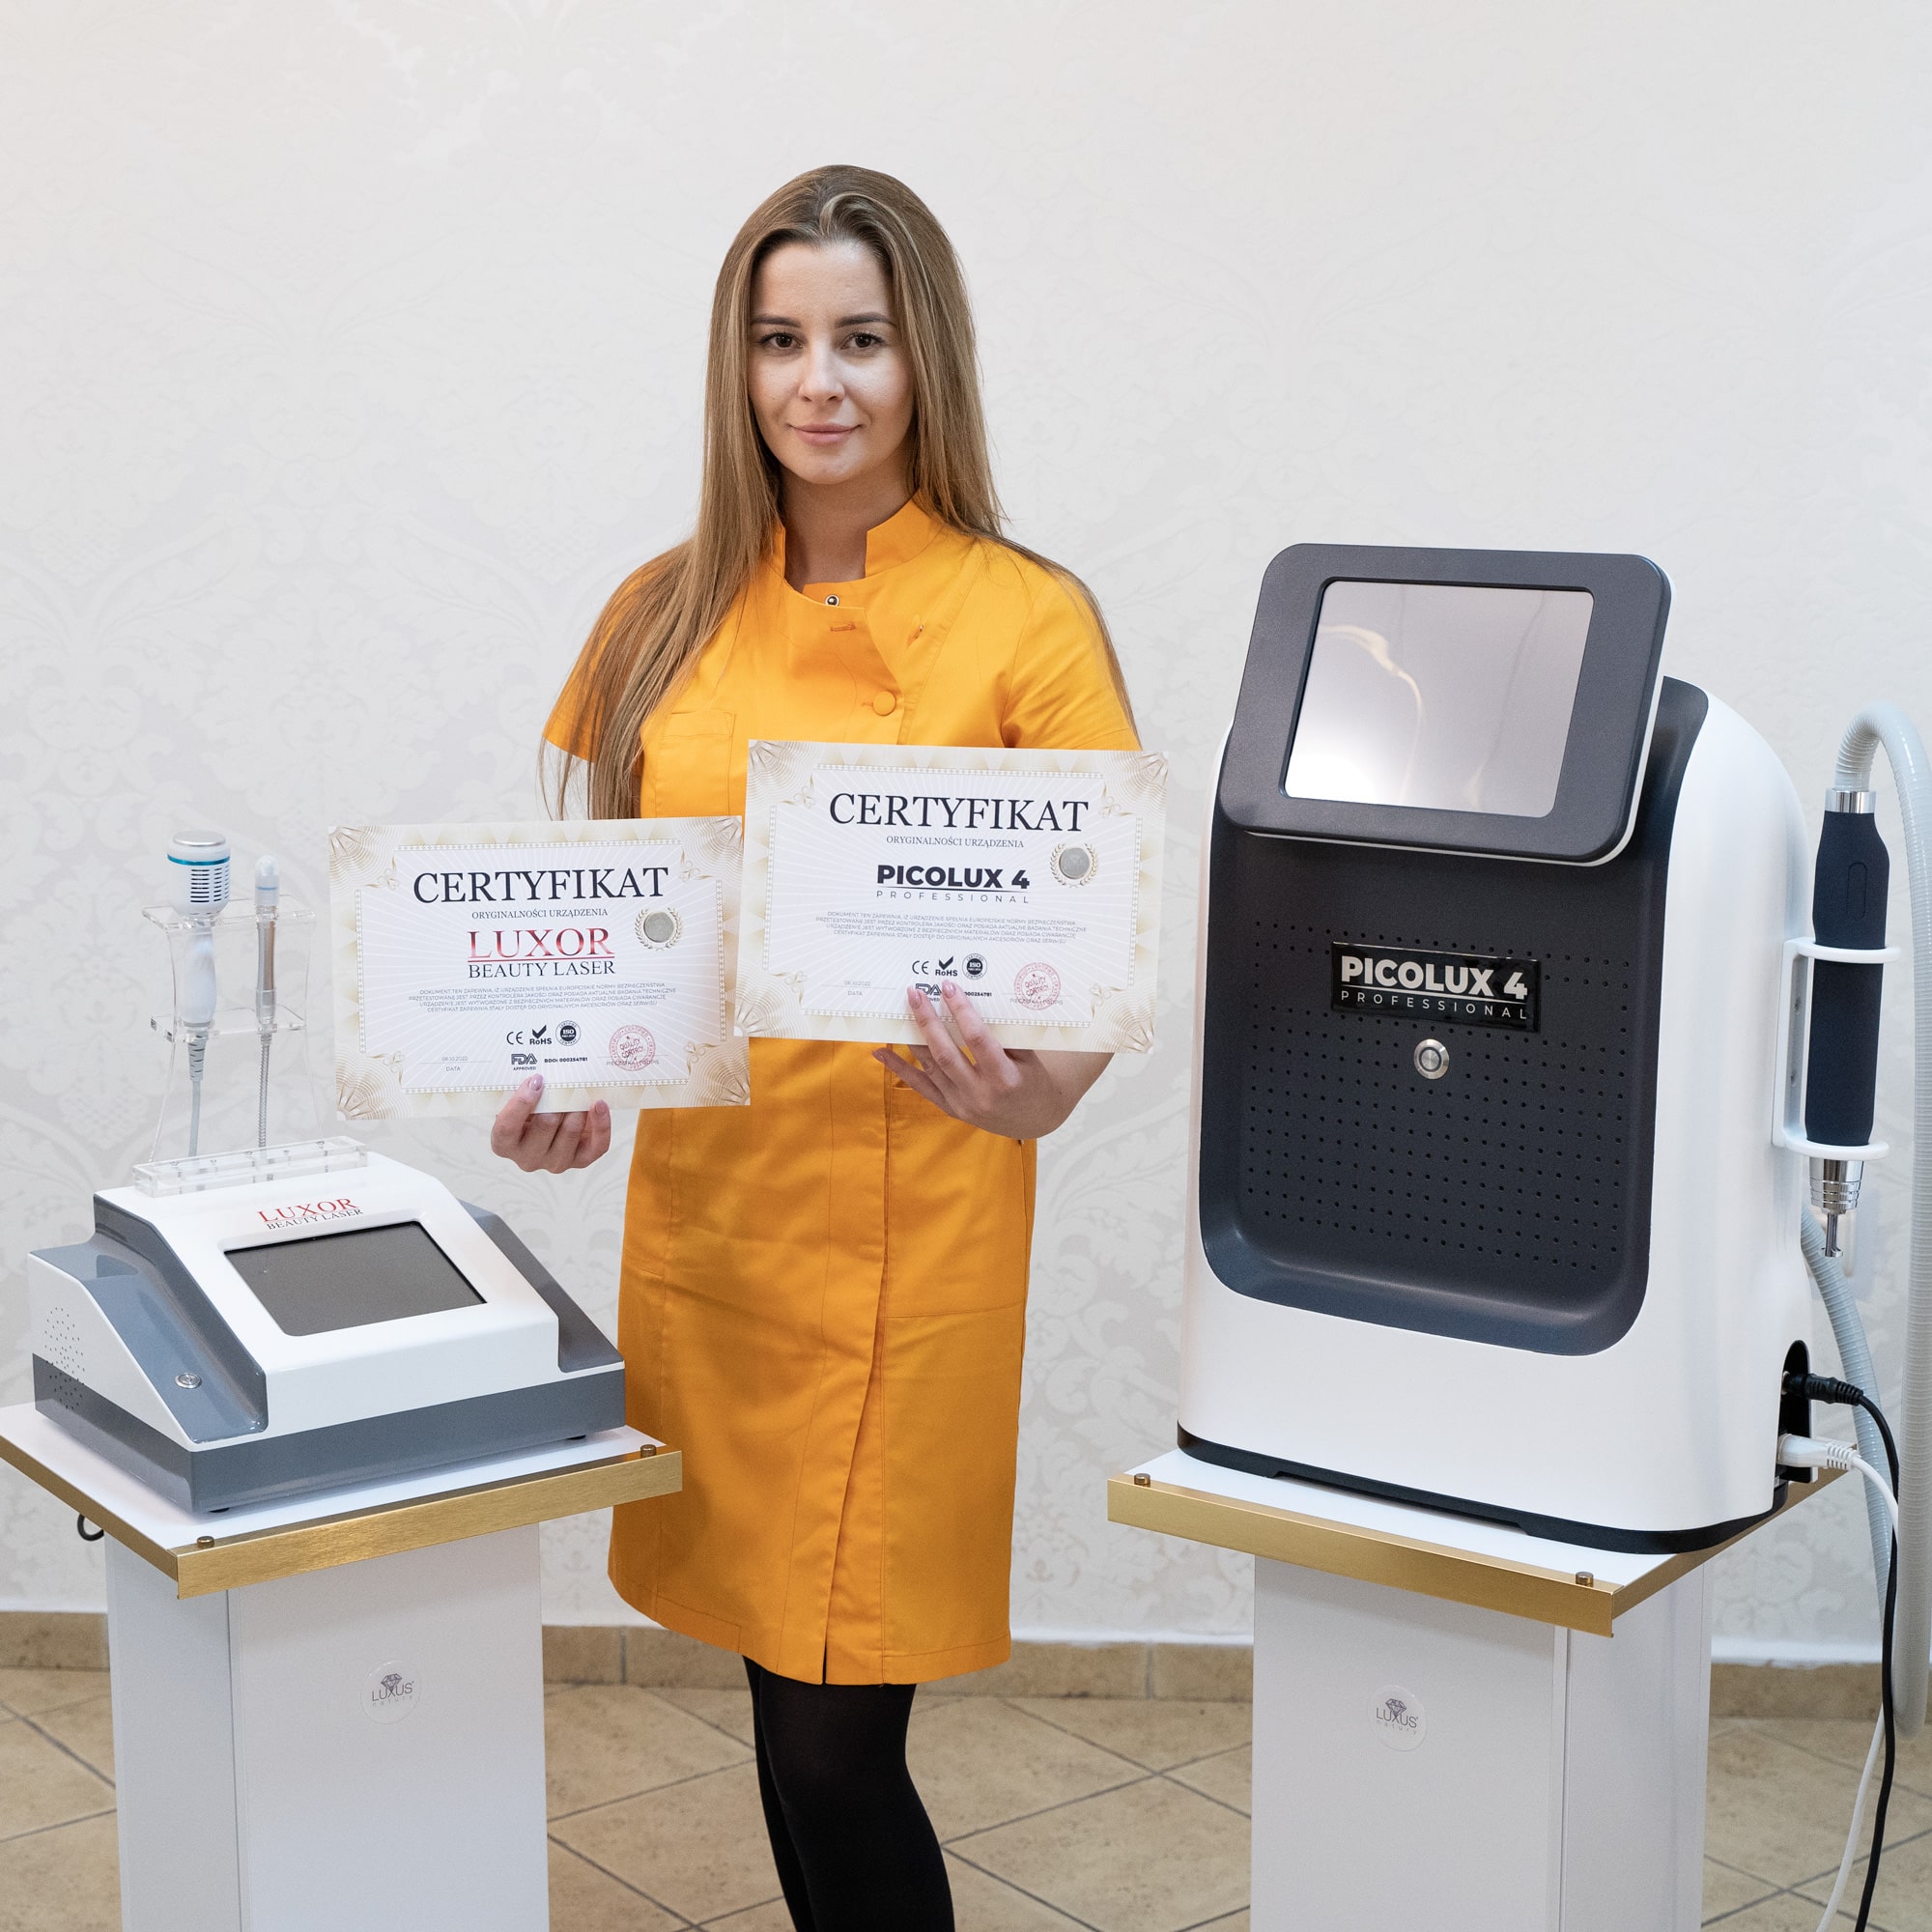 Uczestniczka posiada po jednym certyfikacie z każdego urządzenia - Luxor Beauty Laser i PICOLUX 4 Professional